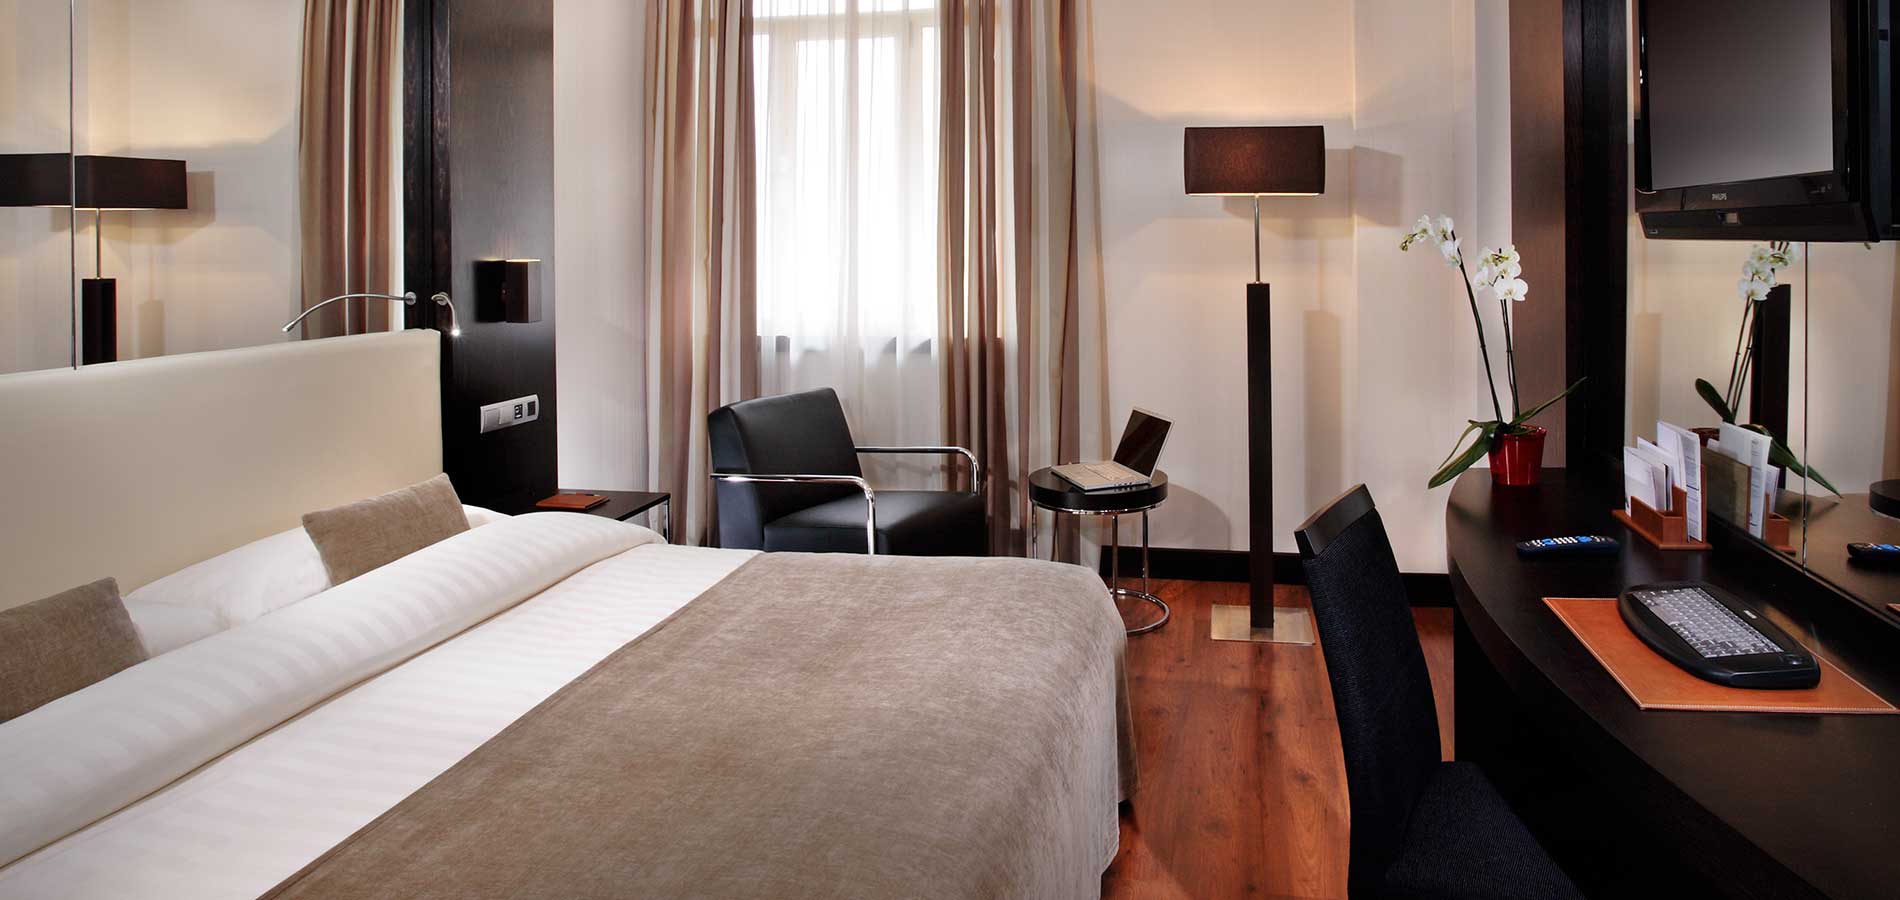 huella dactilar aerolíneas articulo Doble 1 ó 2 camas Parking incluido - Hotel Granada Saray - Granada